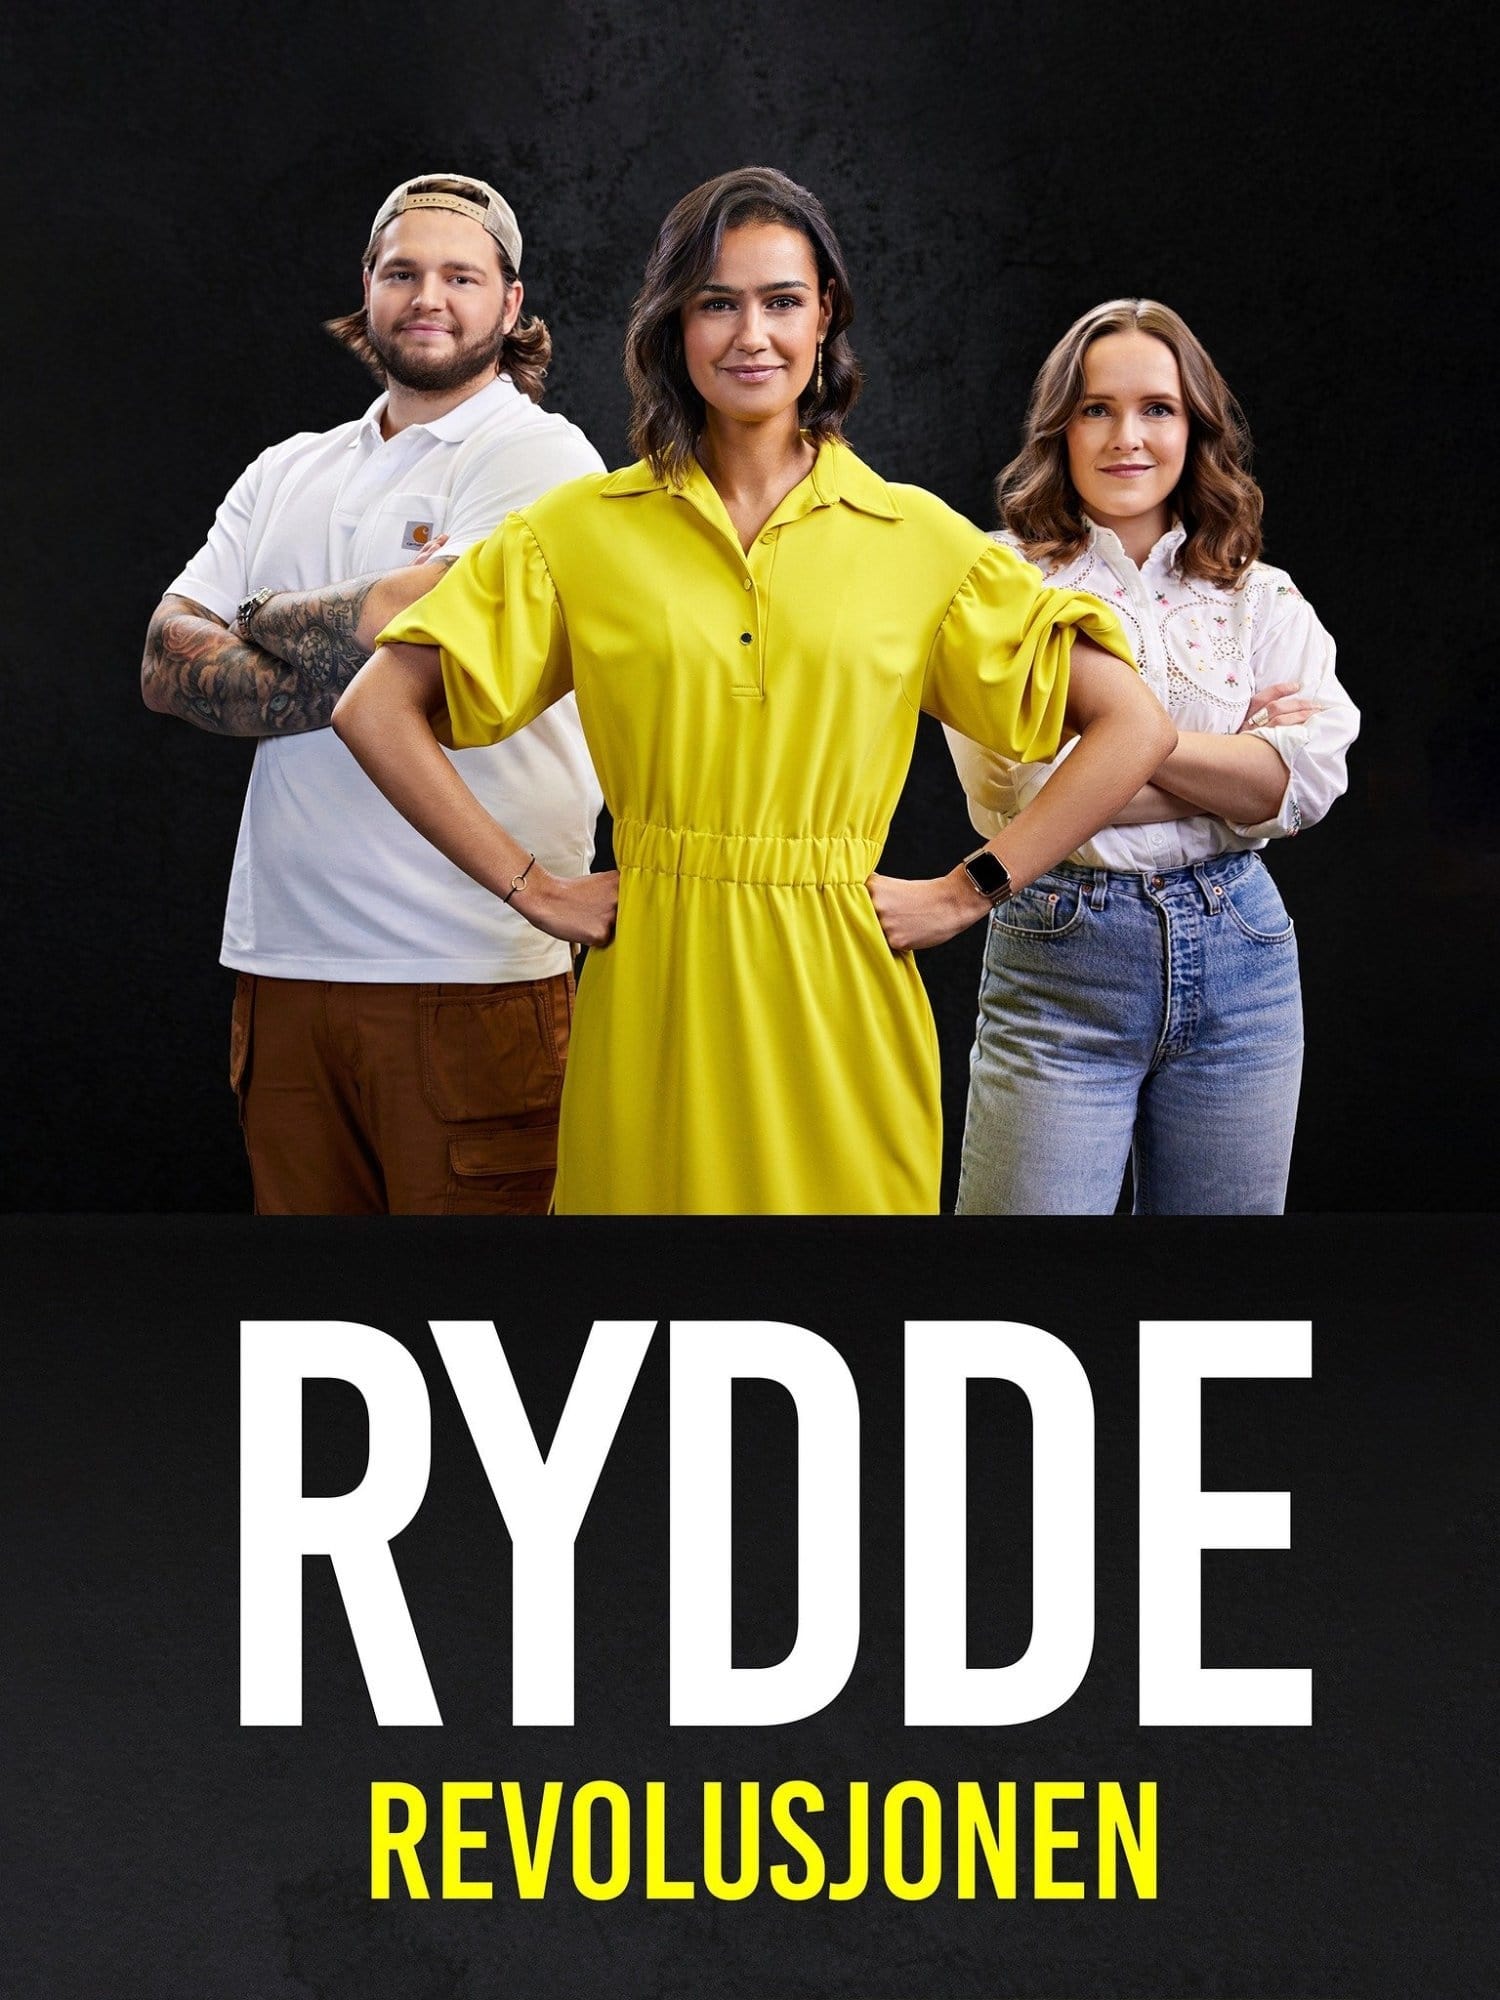 TV ratings for Rydderevolusjonen in Australia. TV 2 Play TV series